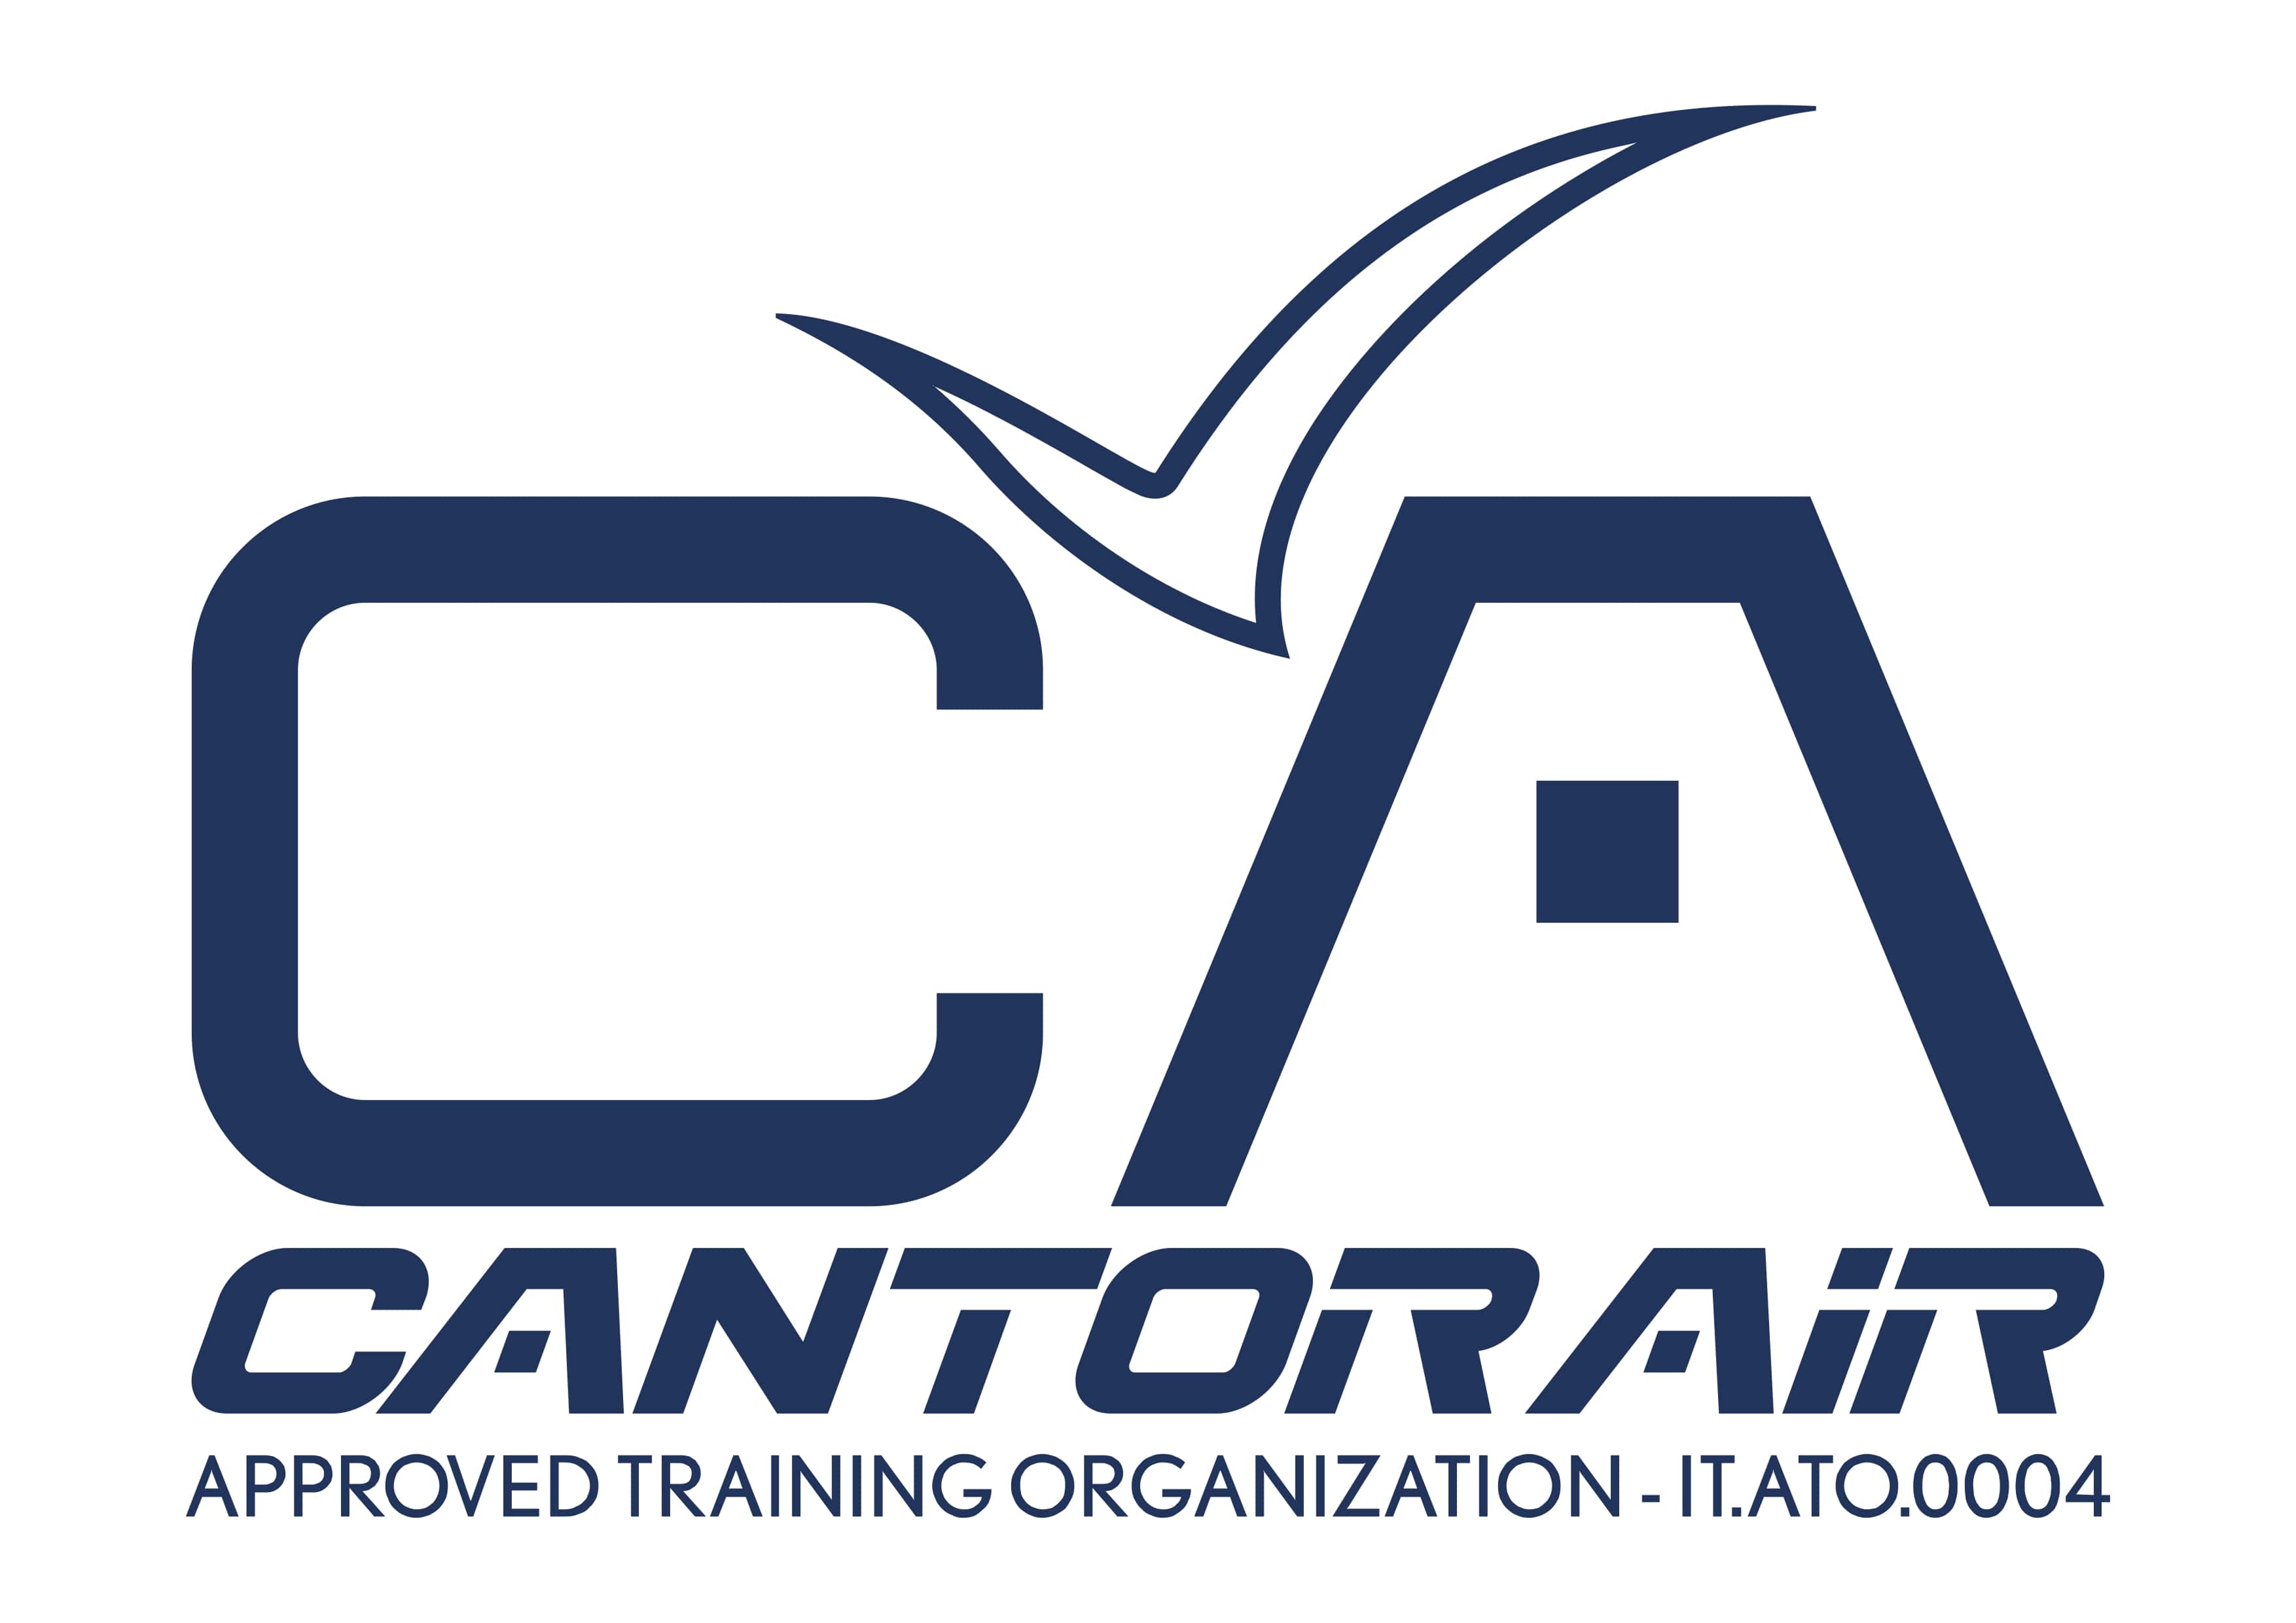 Logo CANTOR AIR 